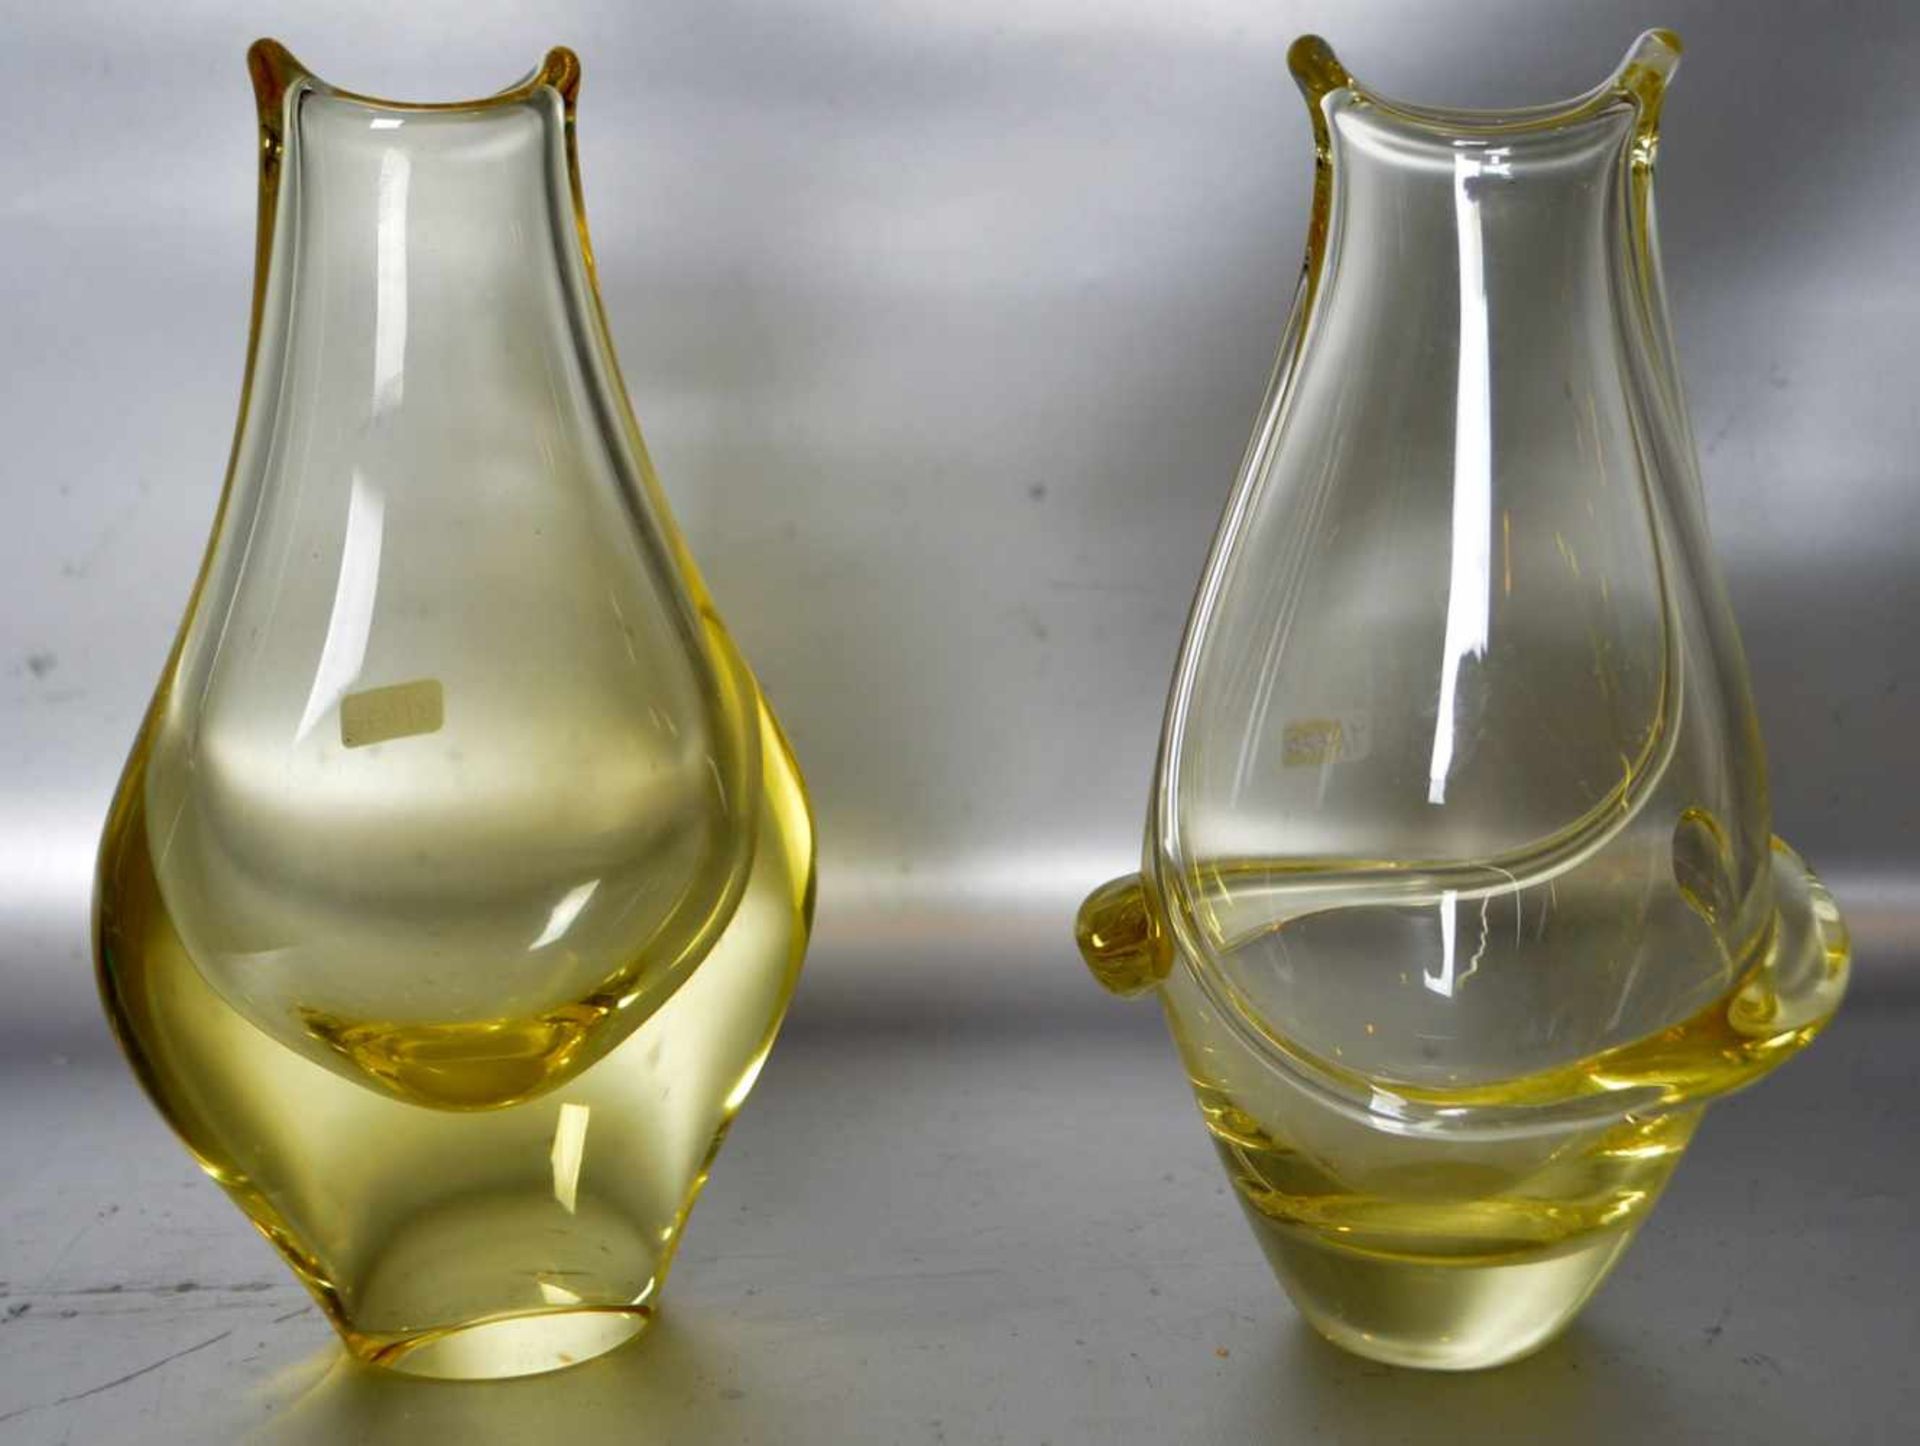 Zwei Vasenfarbl. Glas, verschiedene Ausführungen, gelb schimmernd, H 20 cm, 70er Jahre